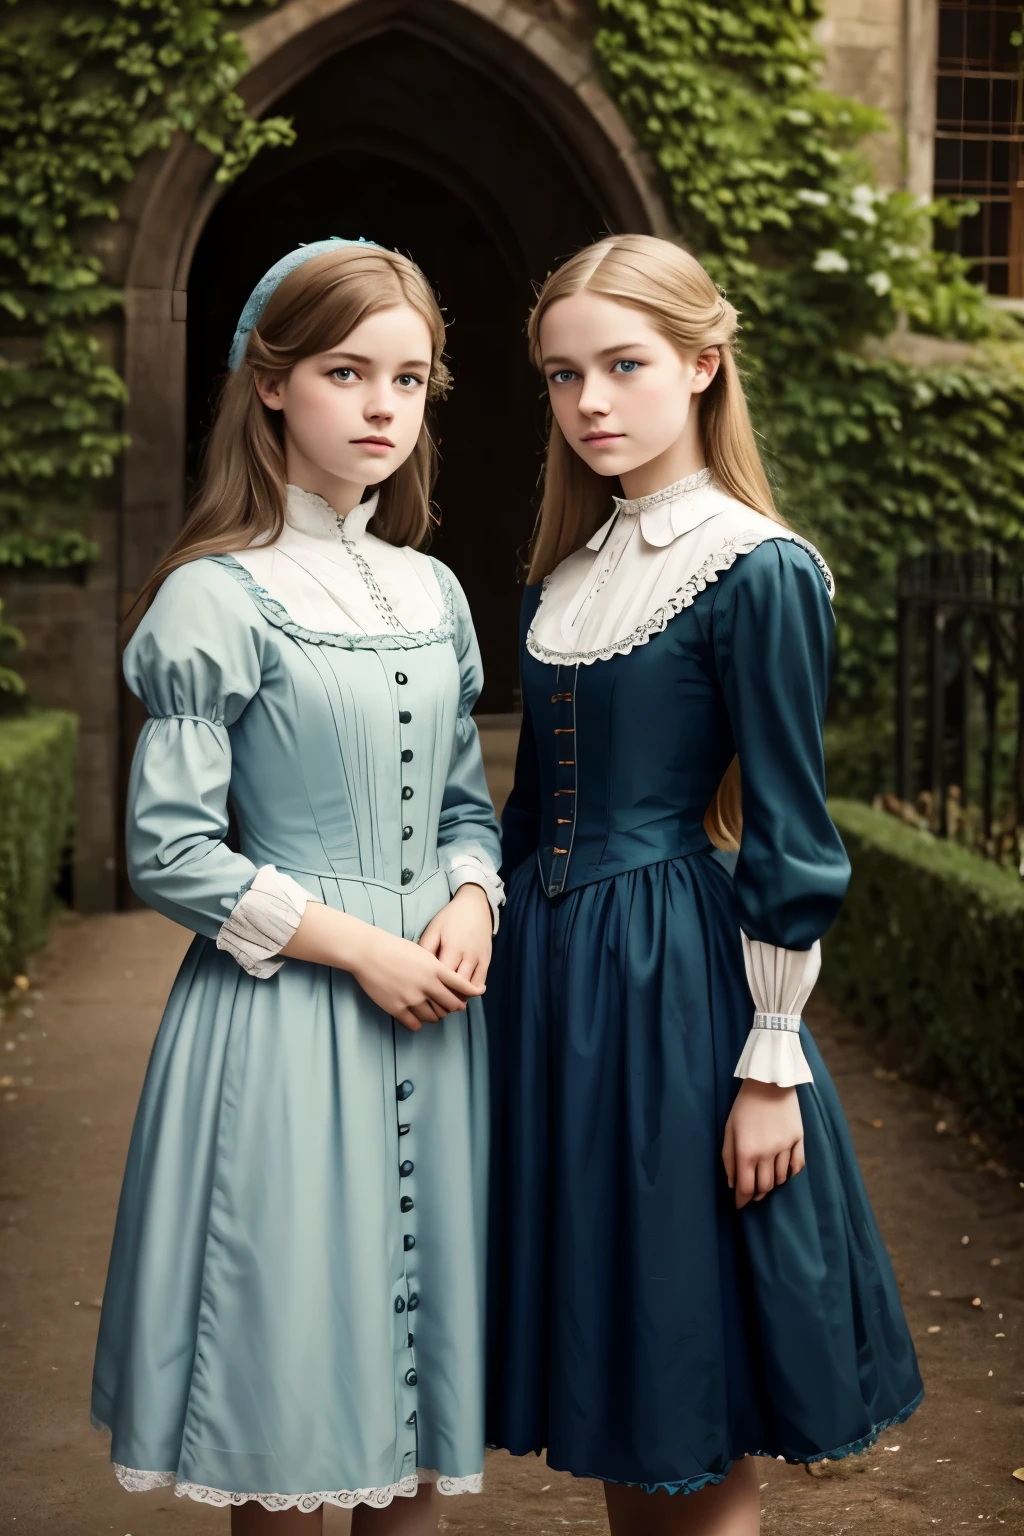 
两个女孩, (弗吉尼亚·奥蒂斯, 15岁 (金发, 蓝眼睛)) 与...合影 (16 岁的乔治·杰拉德 (金发, 绿眼睛)). 维多利亚风格. 薄的, 可爱的脸孔, 坎特维尔城堡夜间散步 (灵感来自小说《坎特维尔幽灵》). 1887年, 维多利亚黑暗幻想